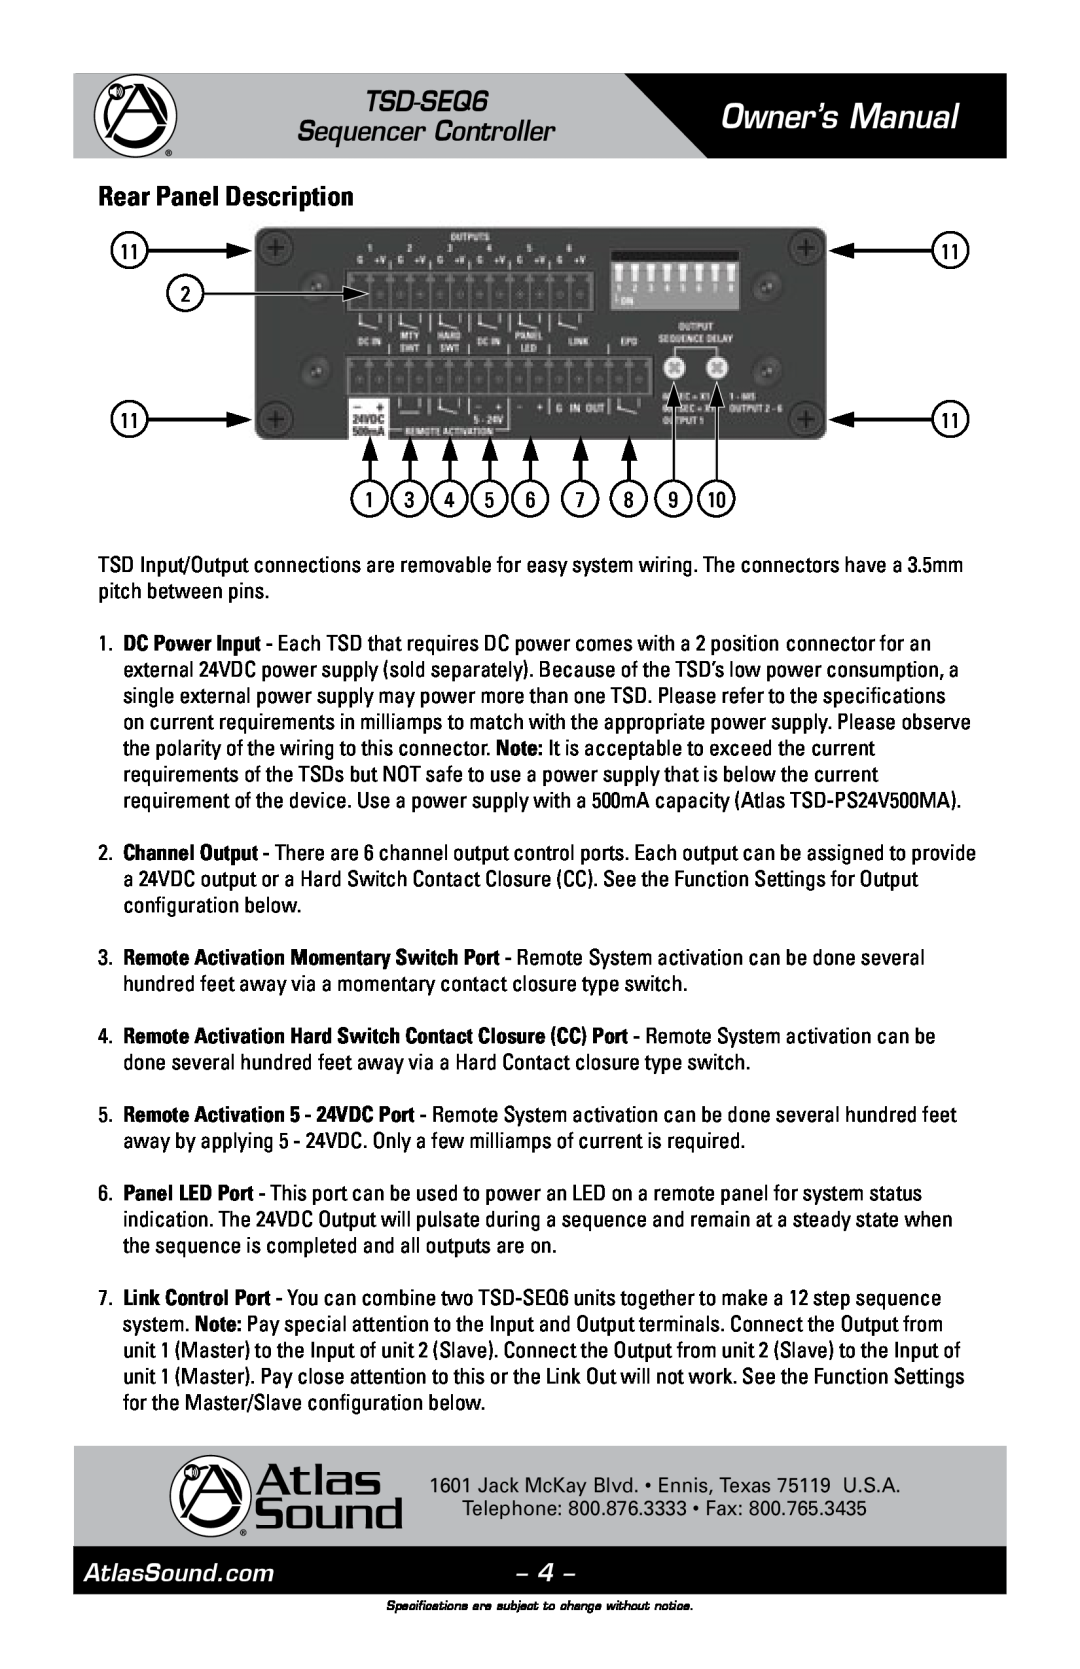 Atlas Sound owner manual Rear Panel Description, Owner’s Manual, TSD-SEQ6 Sequencer Controller, AtlasSound.com 